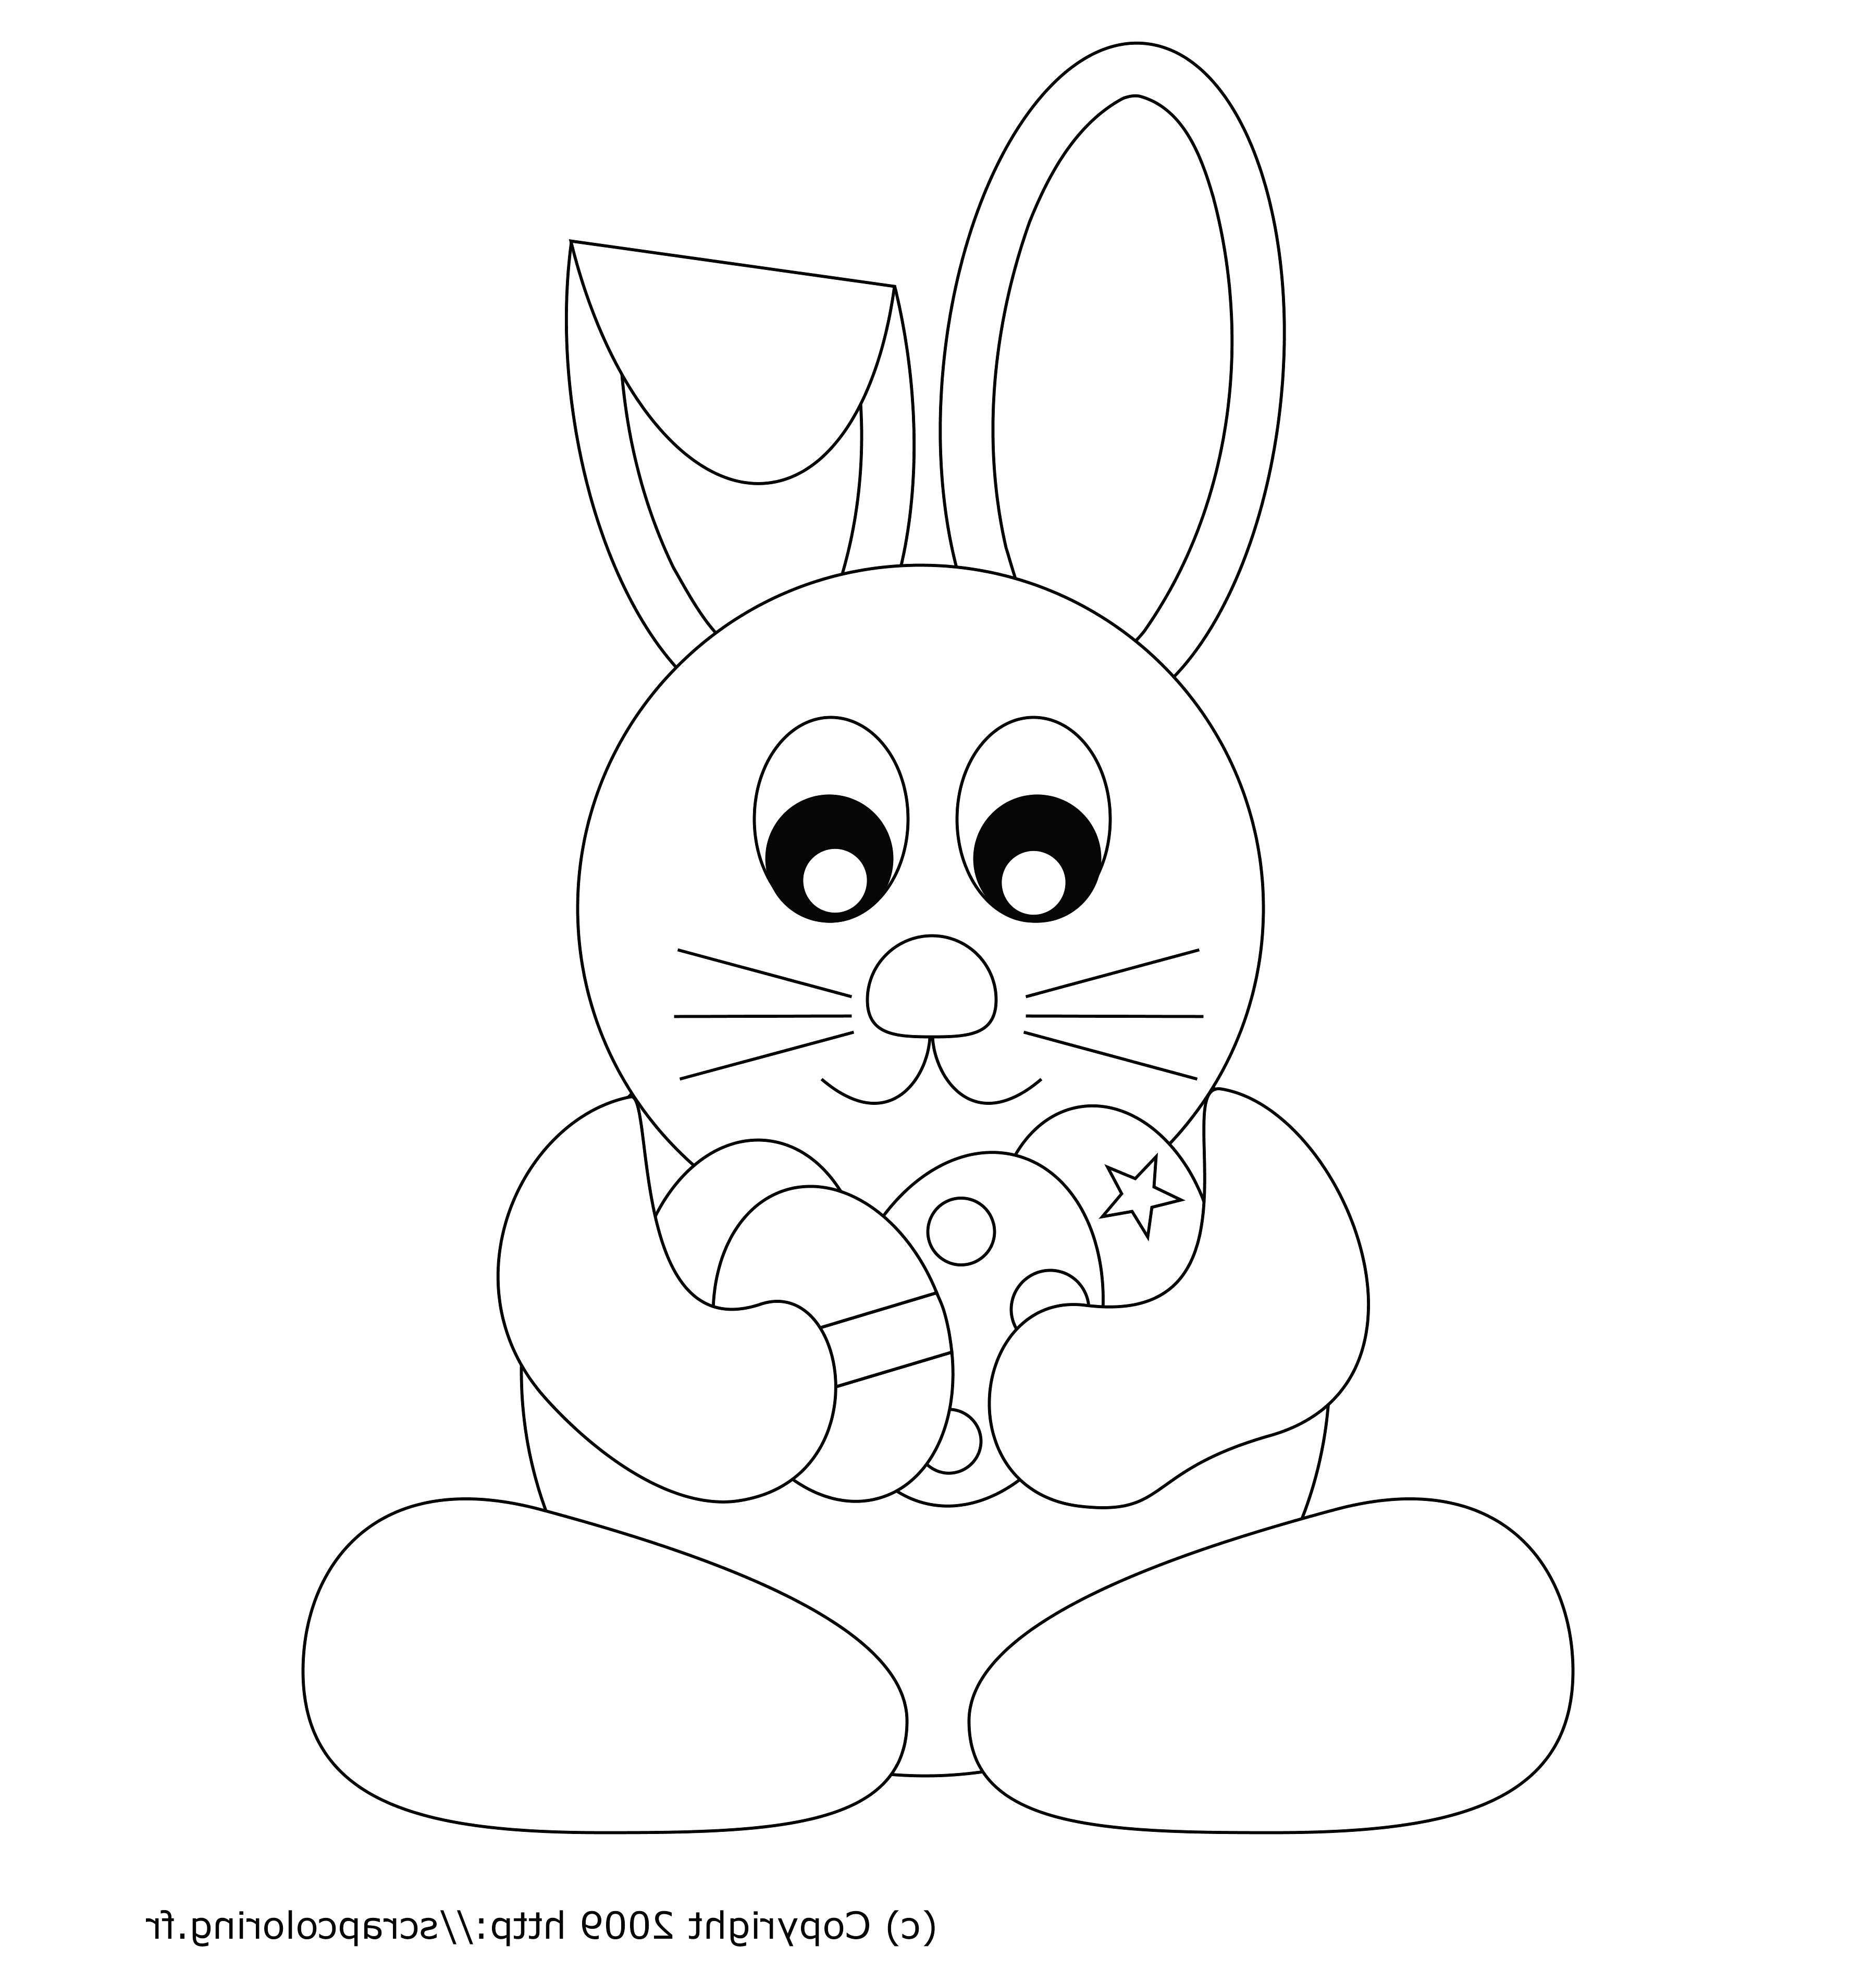 dessin lapin simple mexicaindessin avec dessin lapin facile etape par etape ment dessiner un lapin avec riguarda dessin lapin simple et dessin de lapin facile a faire 15 736x1570px dessin